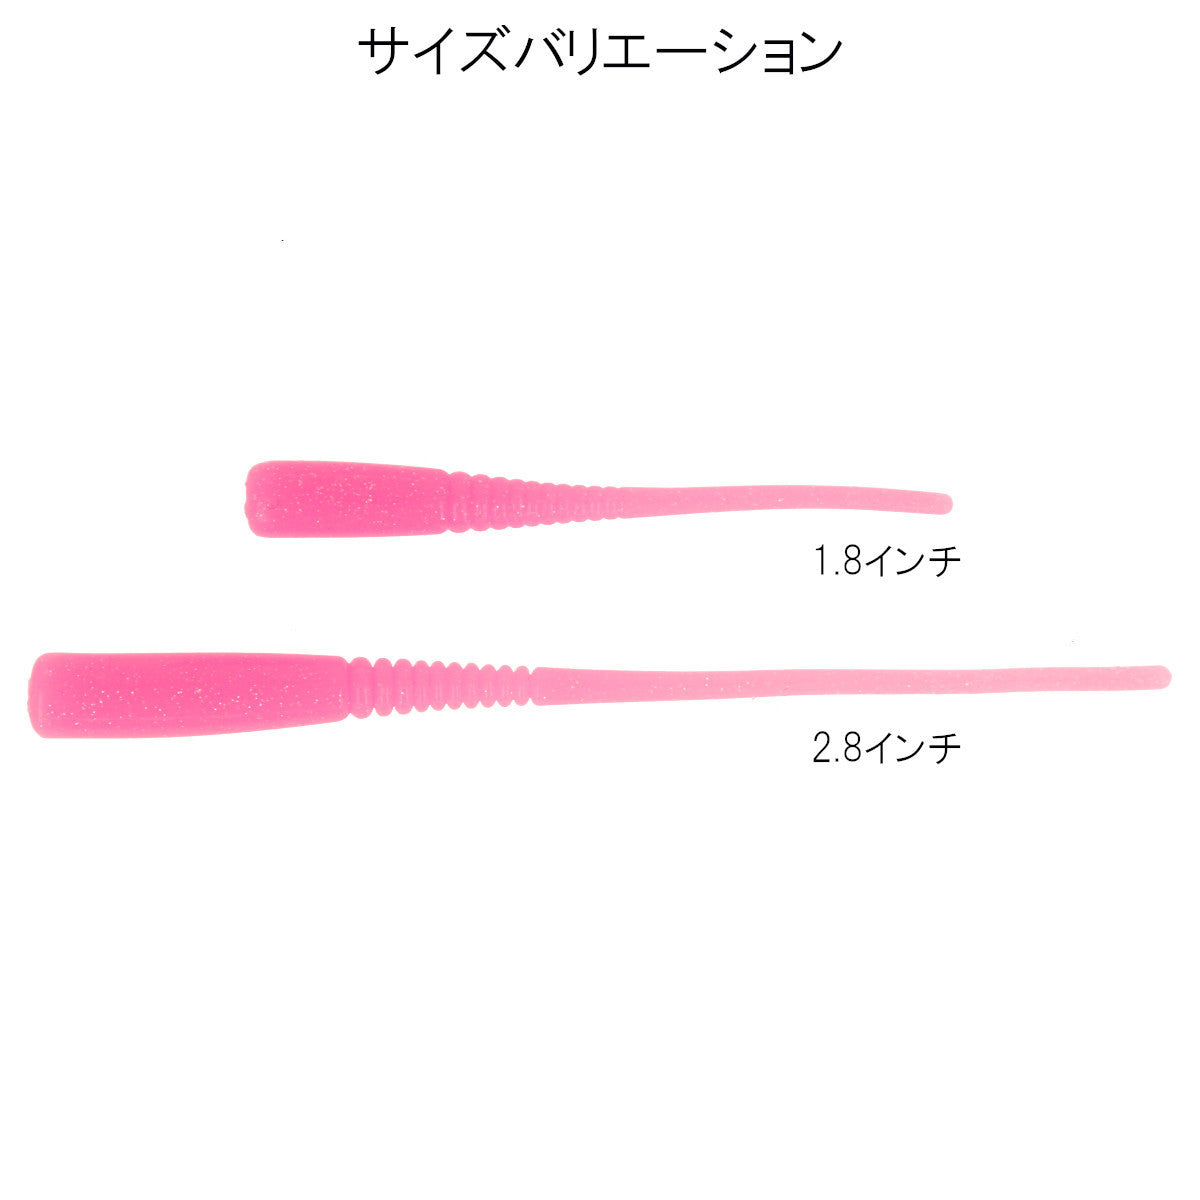 アジキュート 1.8インチ 夜光ピンク 【ゆうパケット】